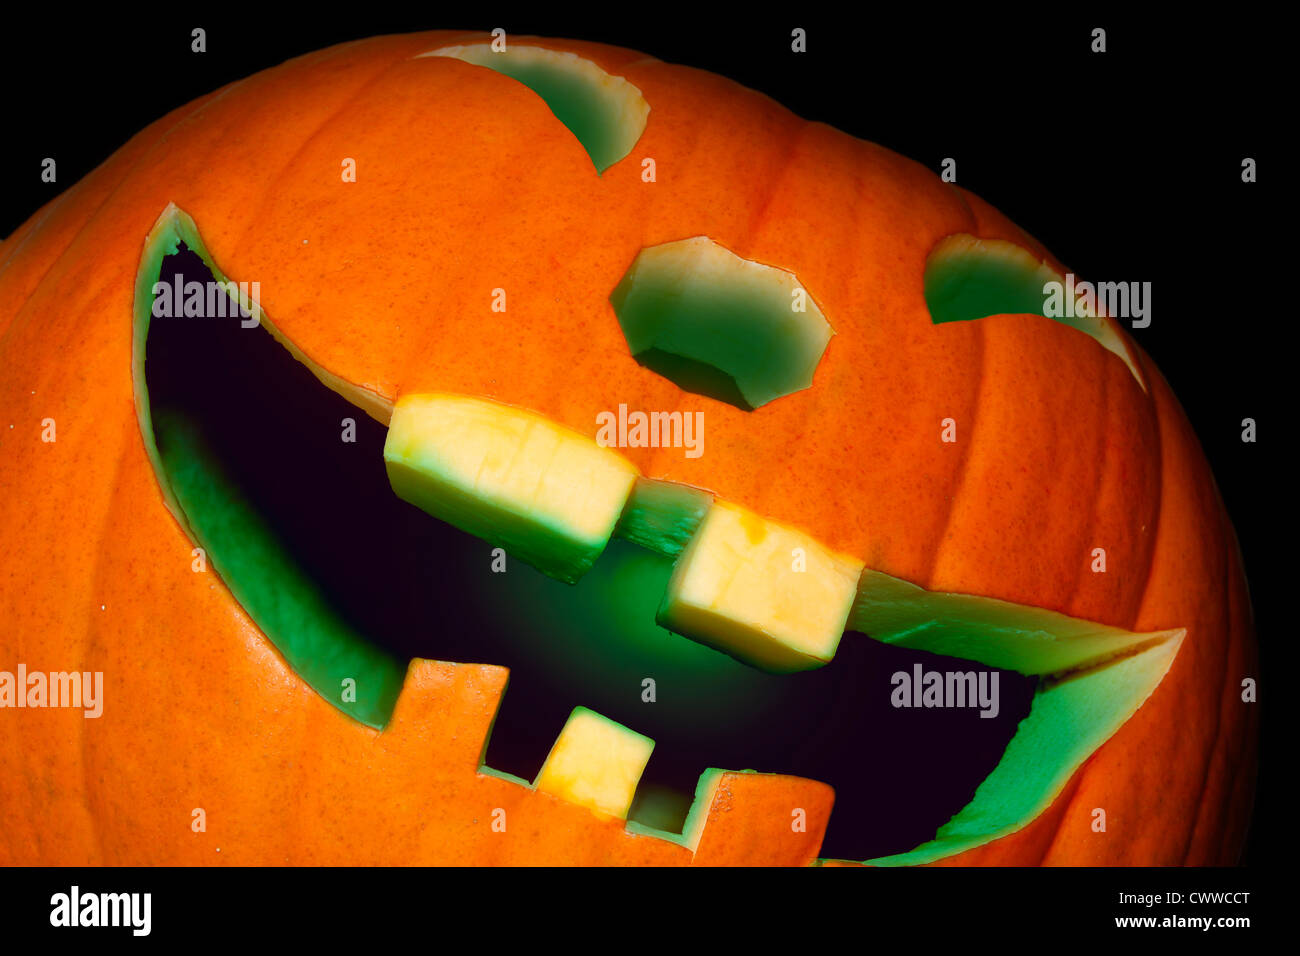 grinning illuminated pumpkin Stock Photo